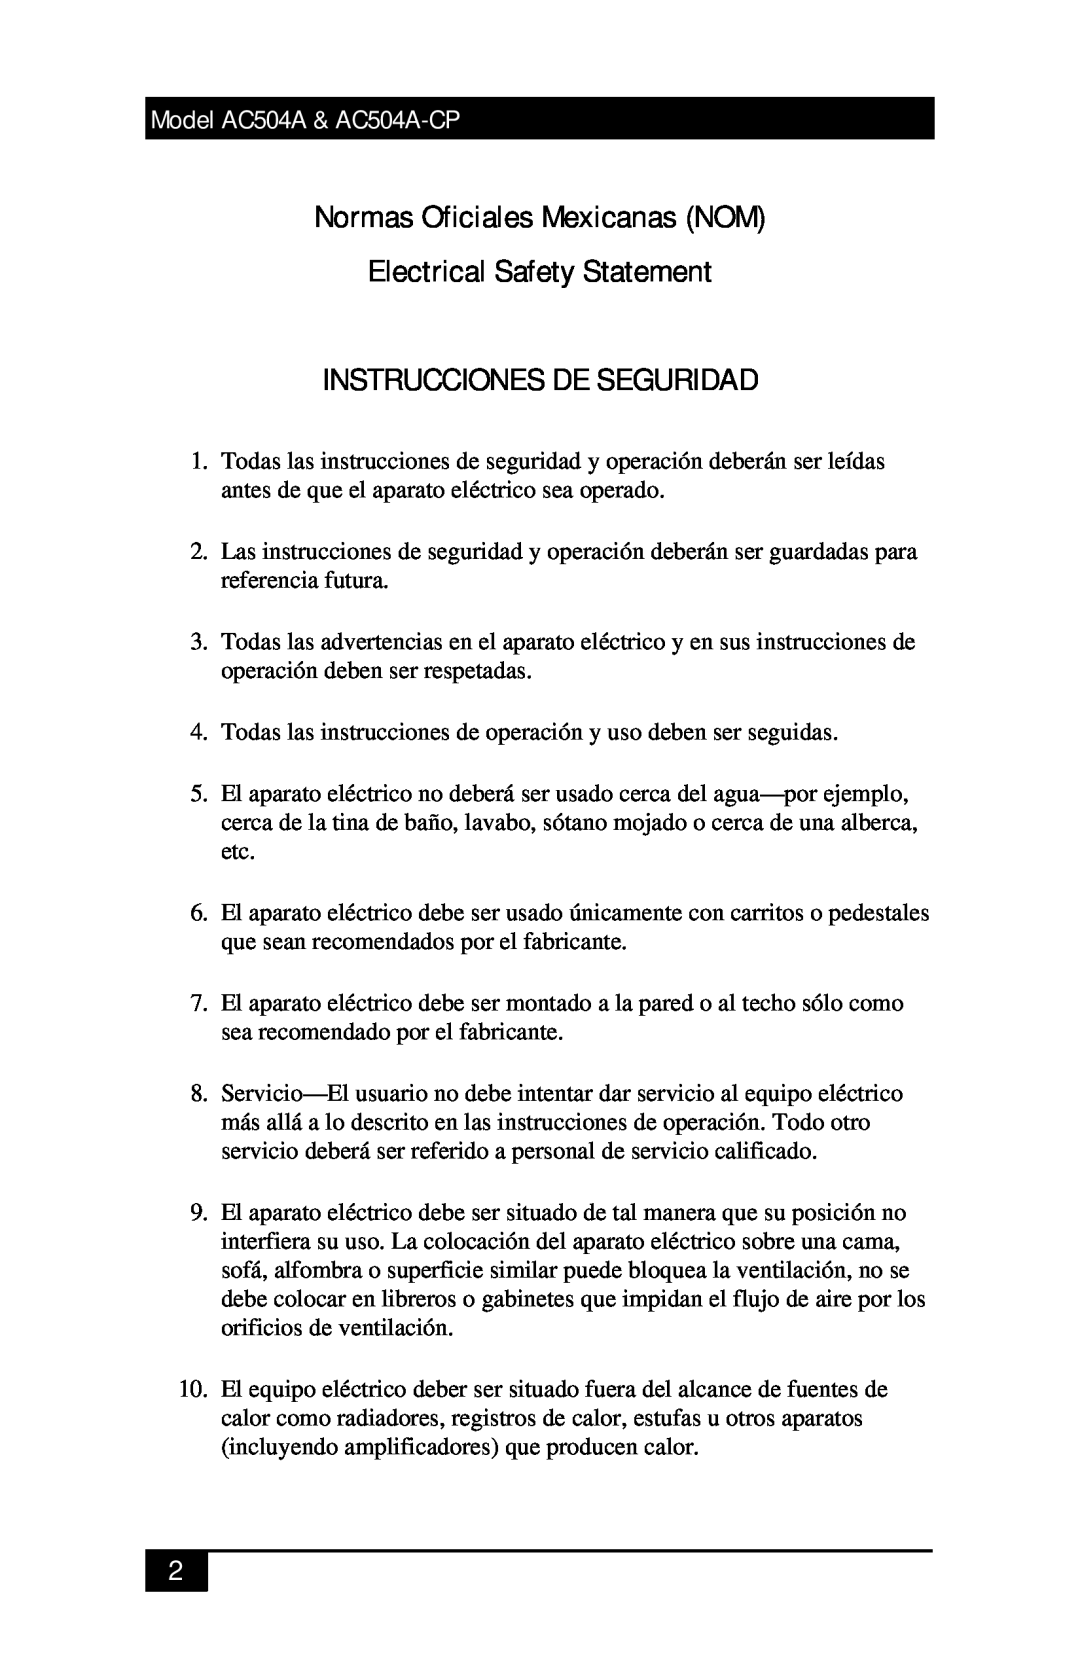 Black Box AC504A-CP manual Normas Oficiales Mexicanas NOM, Electrical Safety Statement, Instrucciones De Seguridad 